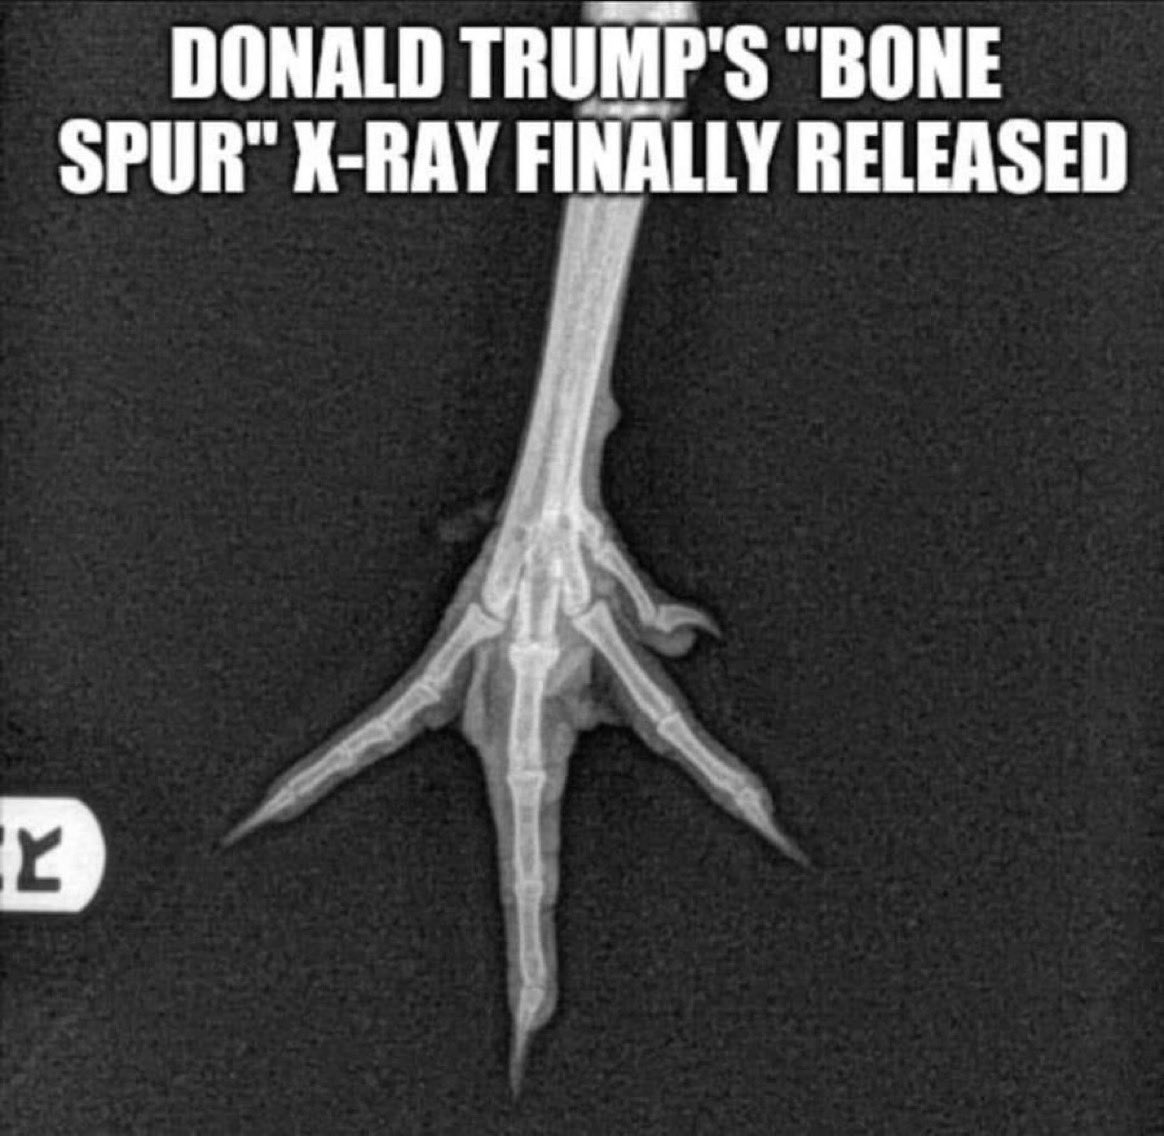 RT @LePapillonBlu2: Mr. Bone spurs coward Trump X-ray. https://t.co/D3GR3K7Eg5